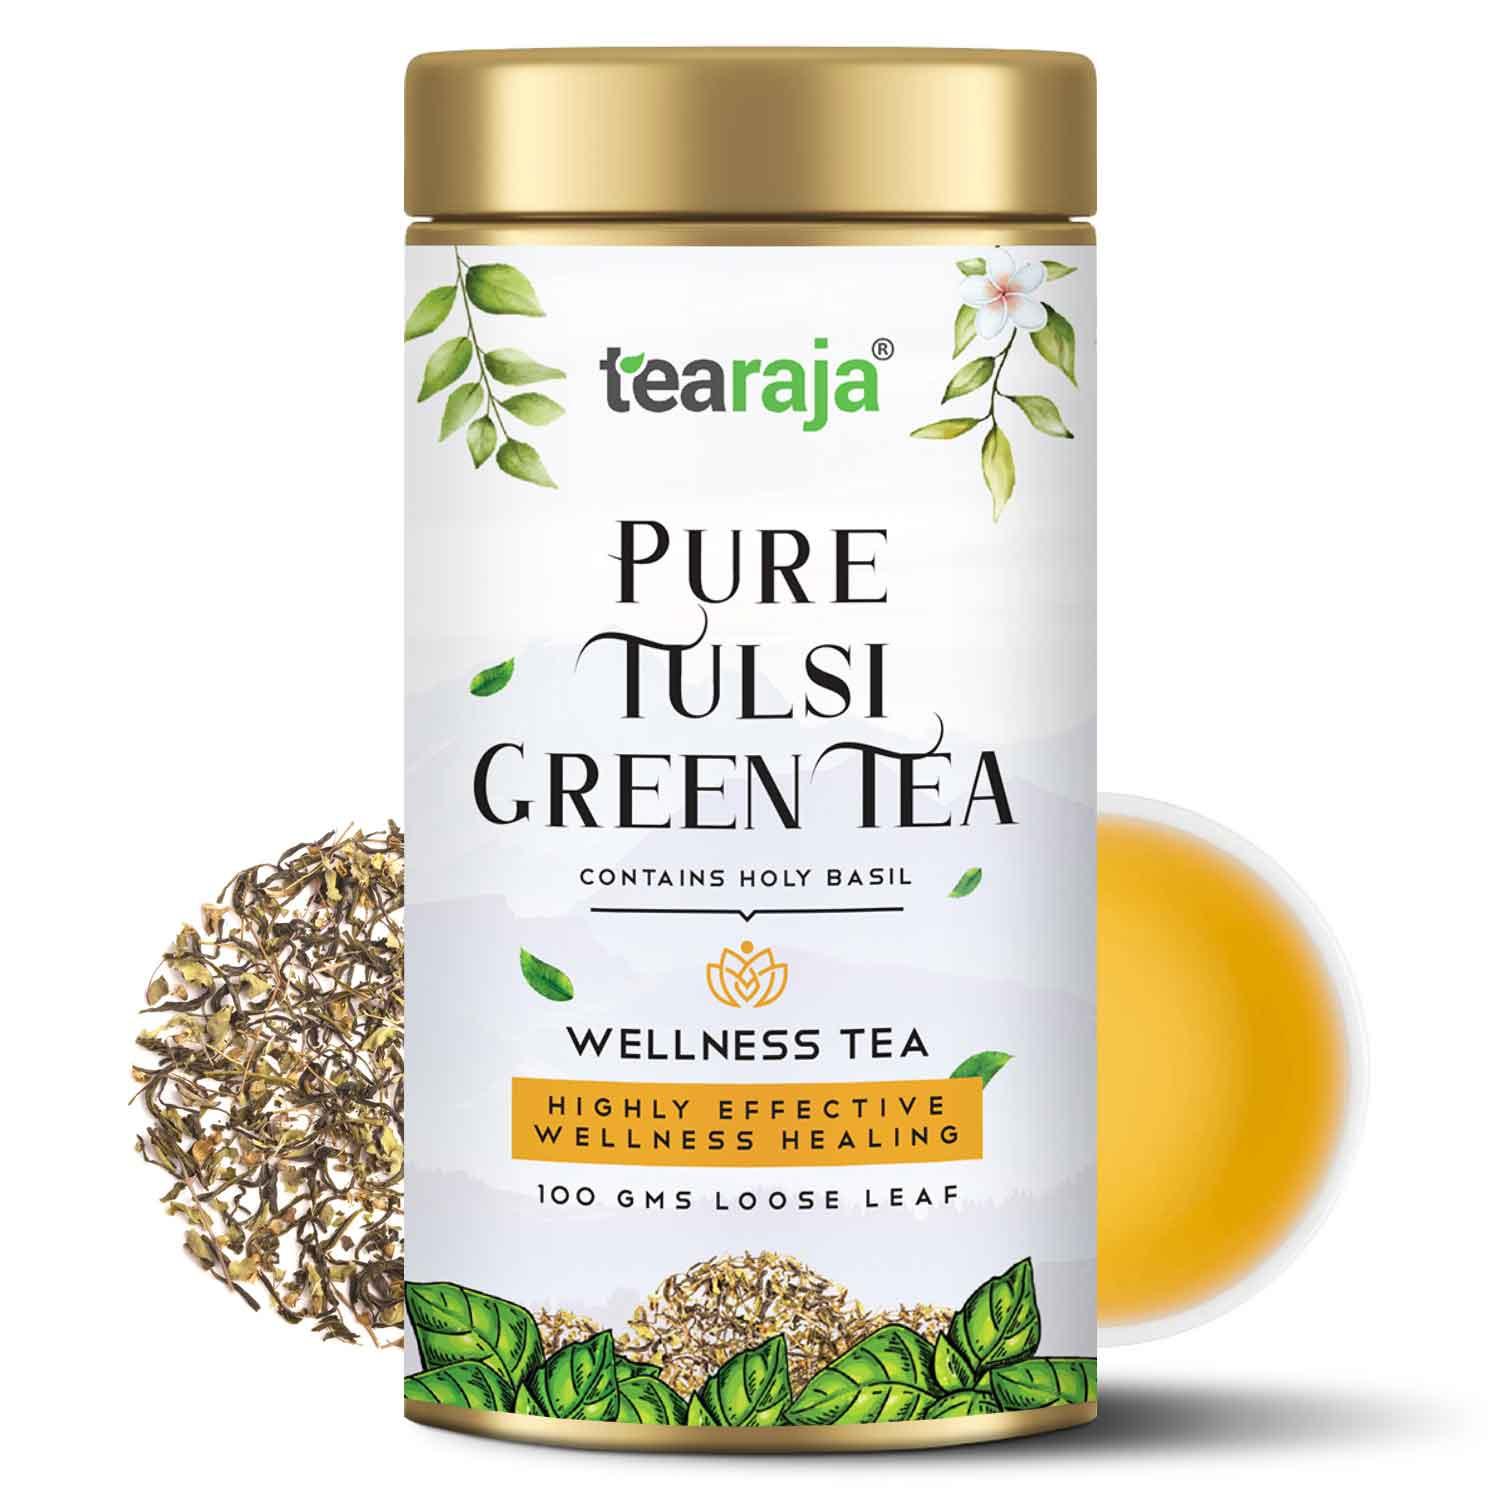 Pure Tulsi Green Tea - Tearaja